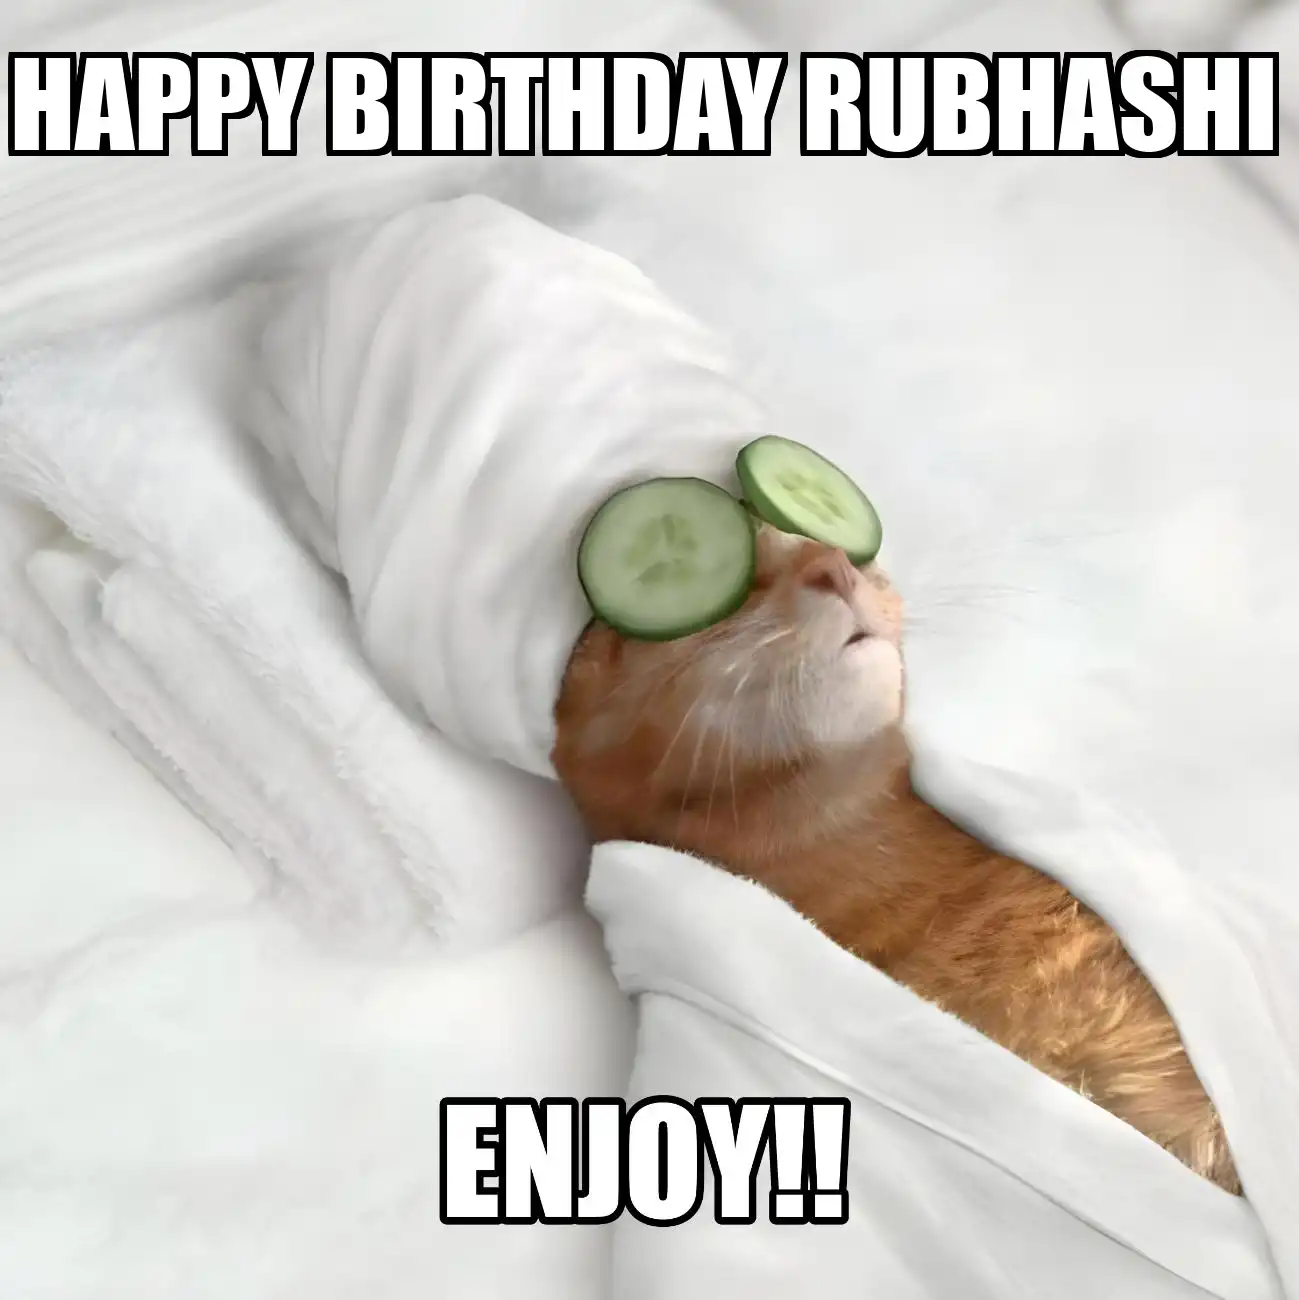 Happy Birthday Rubhashi Enjoy Cat Meme